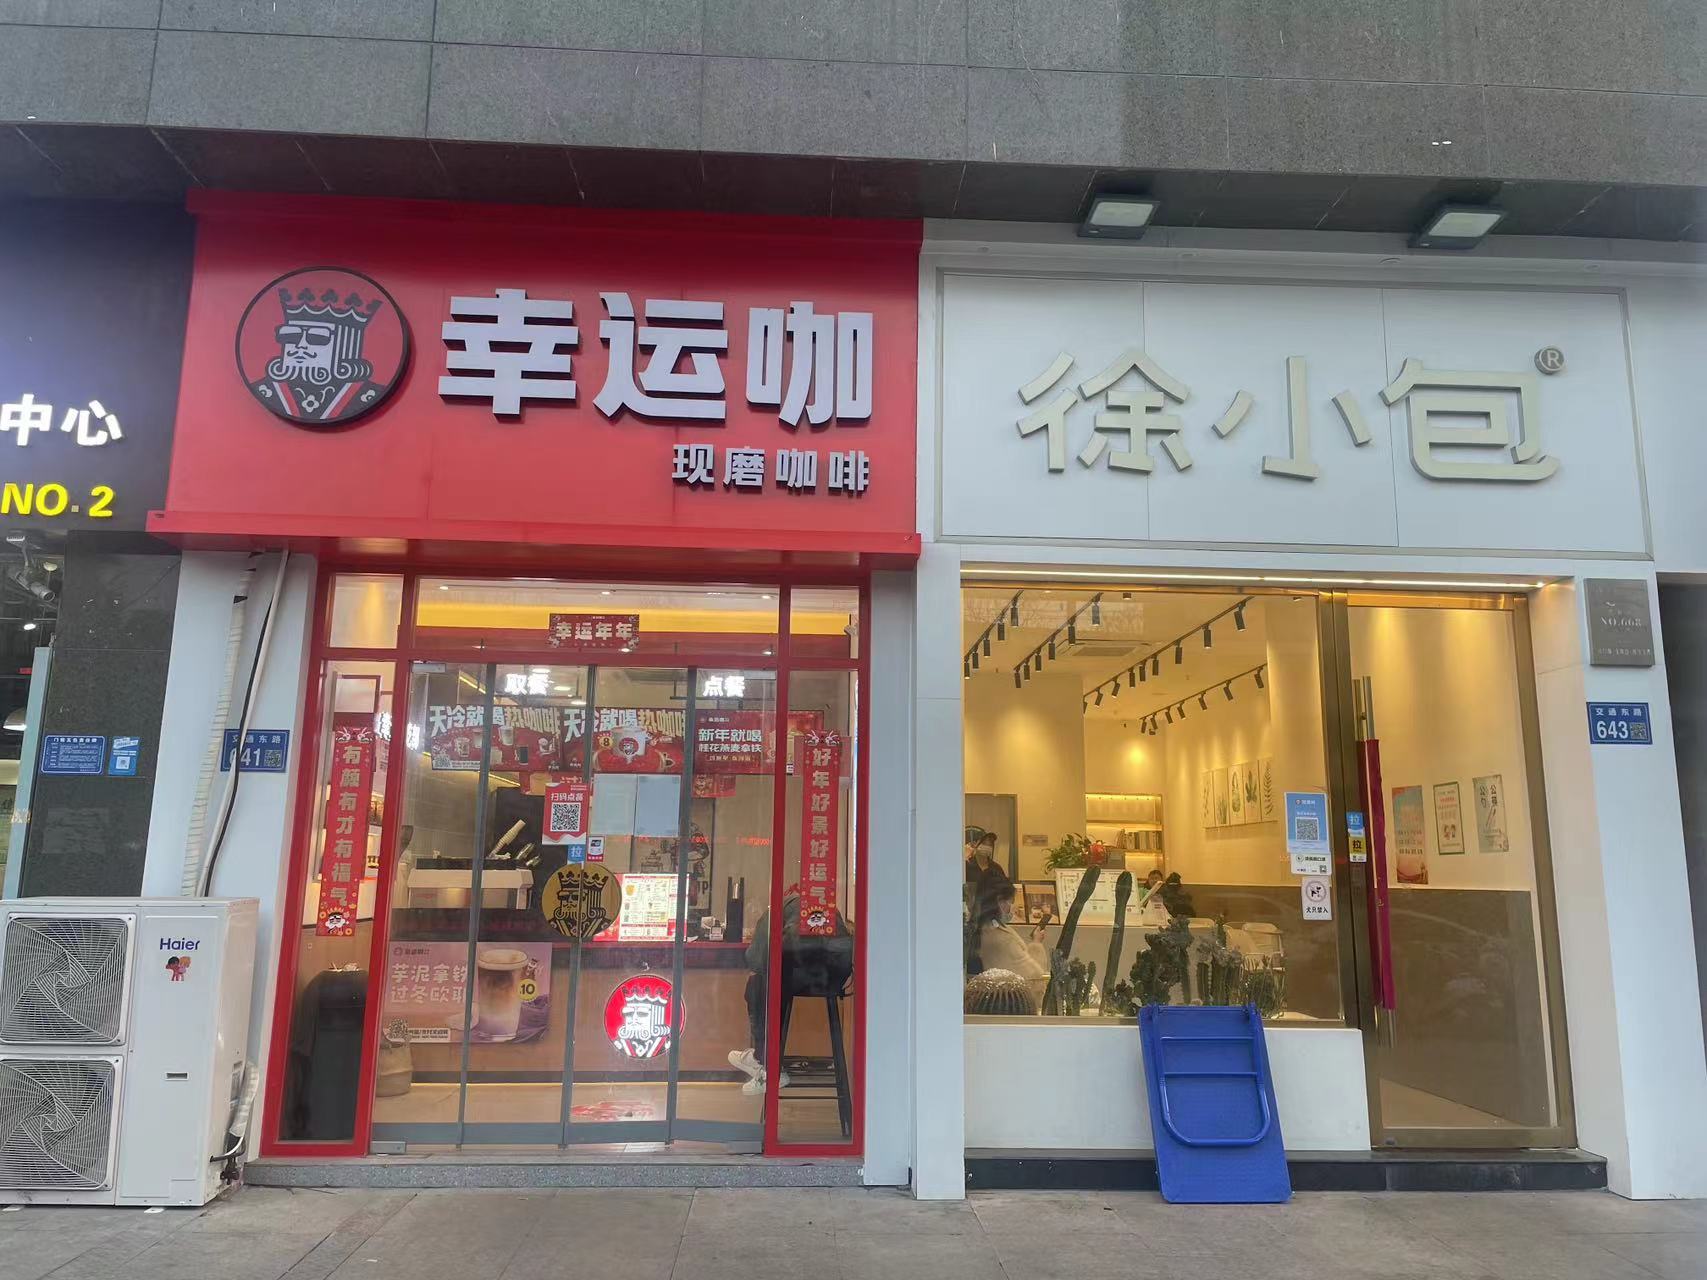 一个咖啡奶茶鏖战县城的样本：30米内开店11家 瑞幸、喜茶磨刀霍霍(图3)